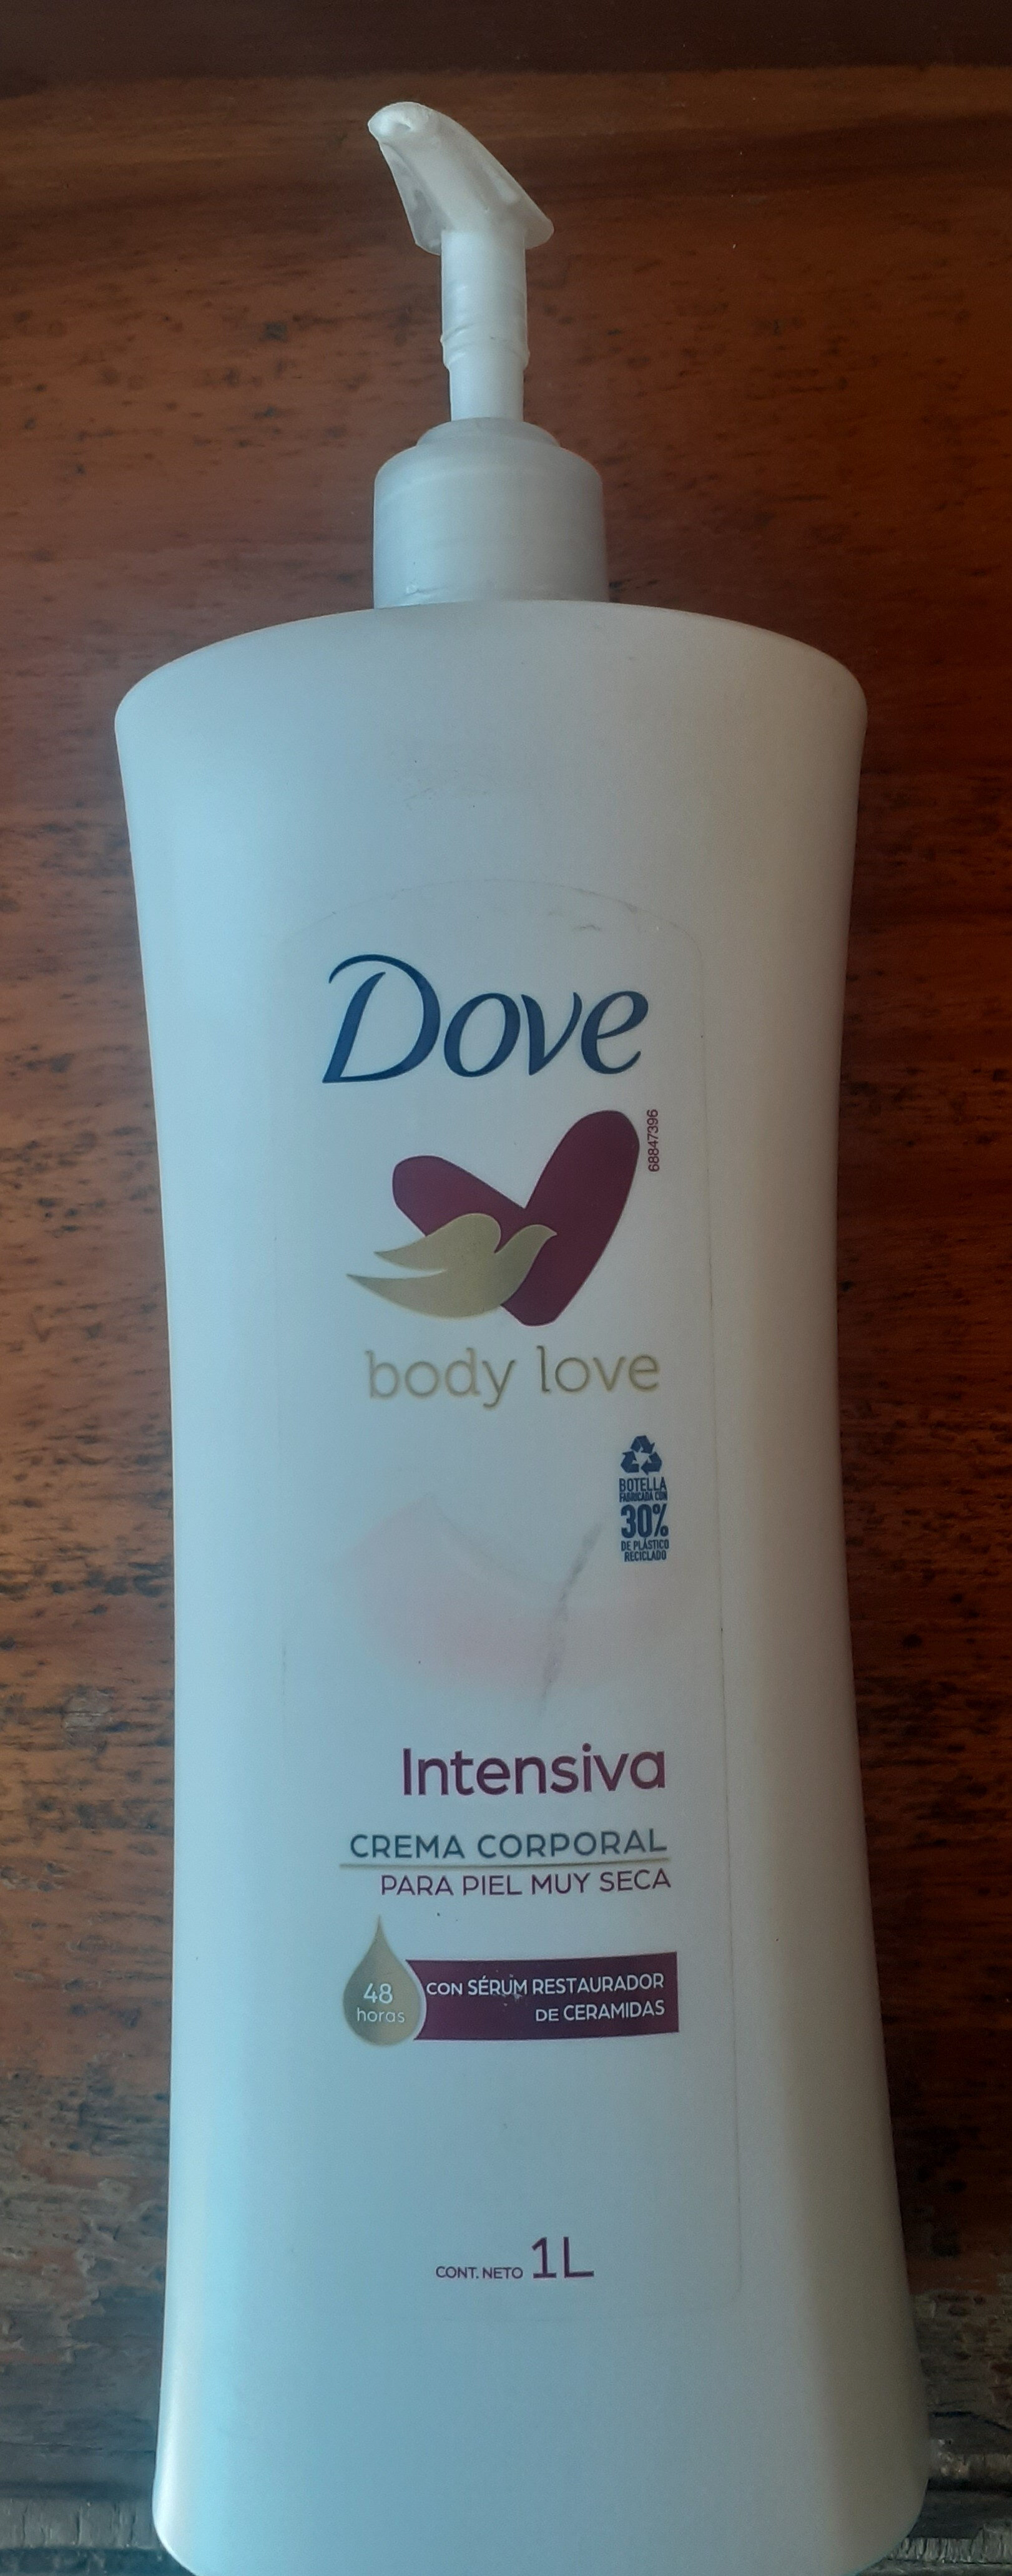 Dove Body Love Intensiva - Produkt - es